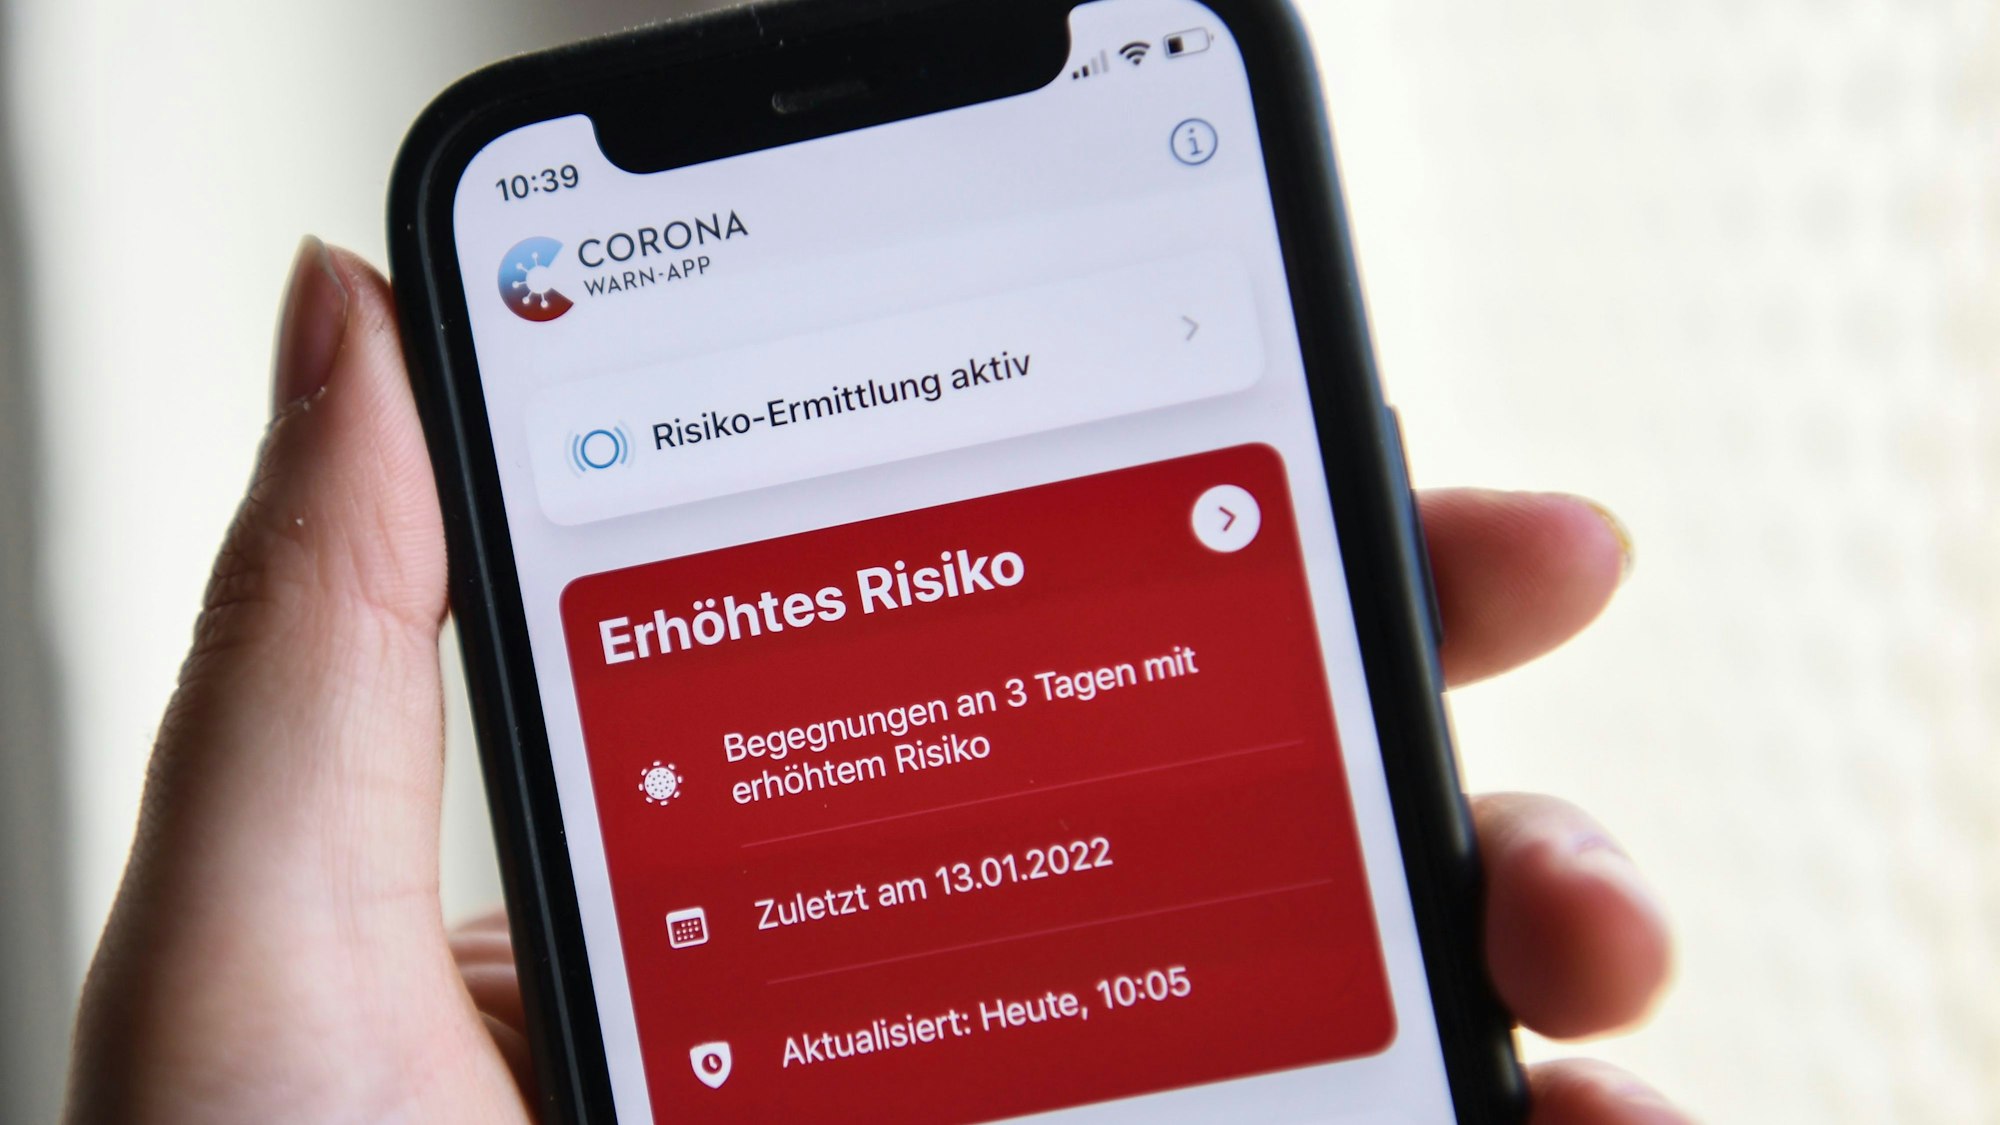 Berlin: Auf einem Smartphone zeigt die geöffnete Corona-Warn-App ein erhöhtes Risiko an. Die rote Anzeige warnt vor drei Begegnungen mit Corona-positiv getesteten Personen.